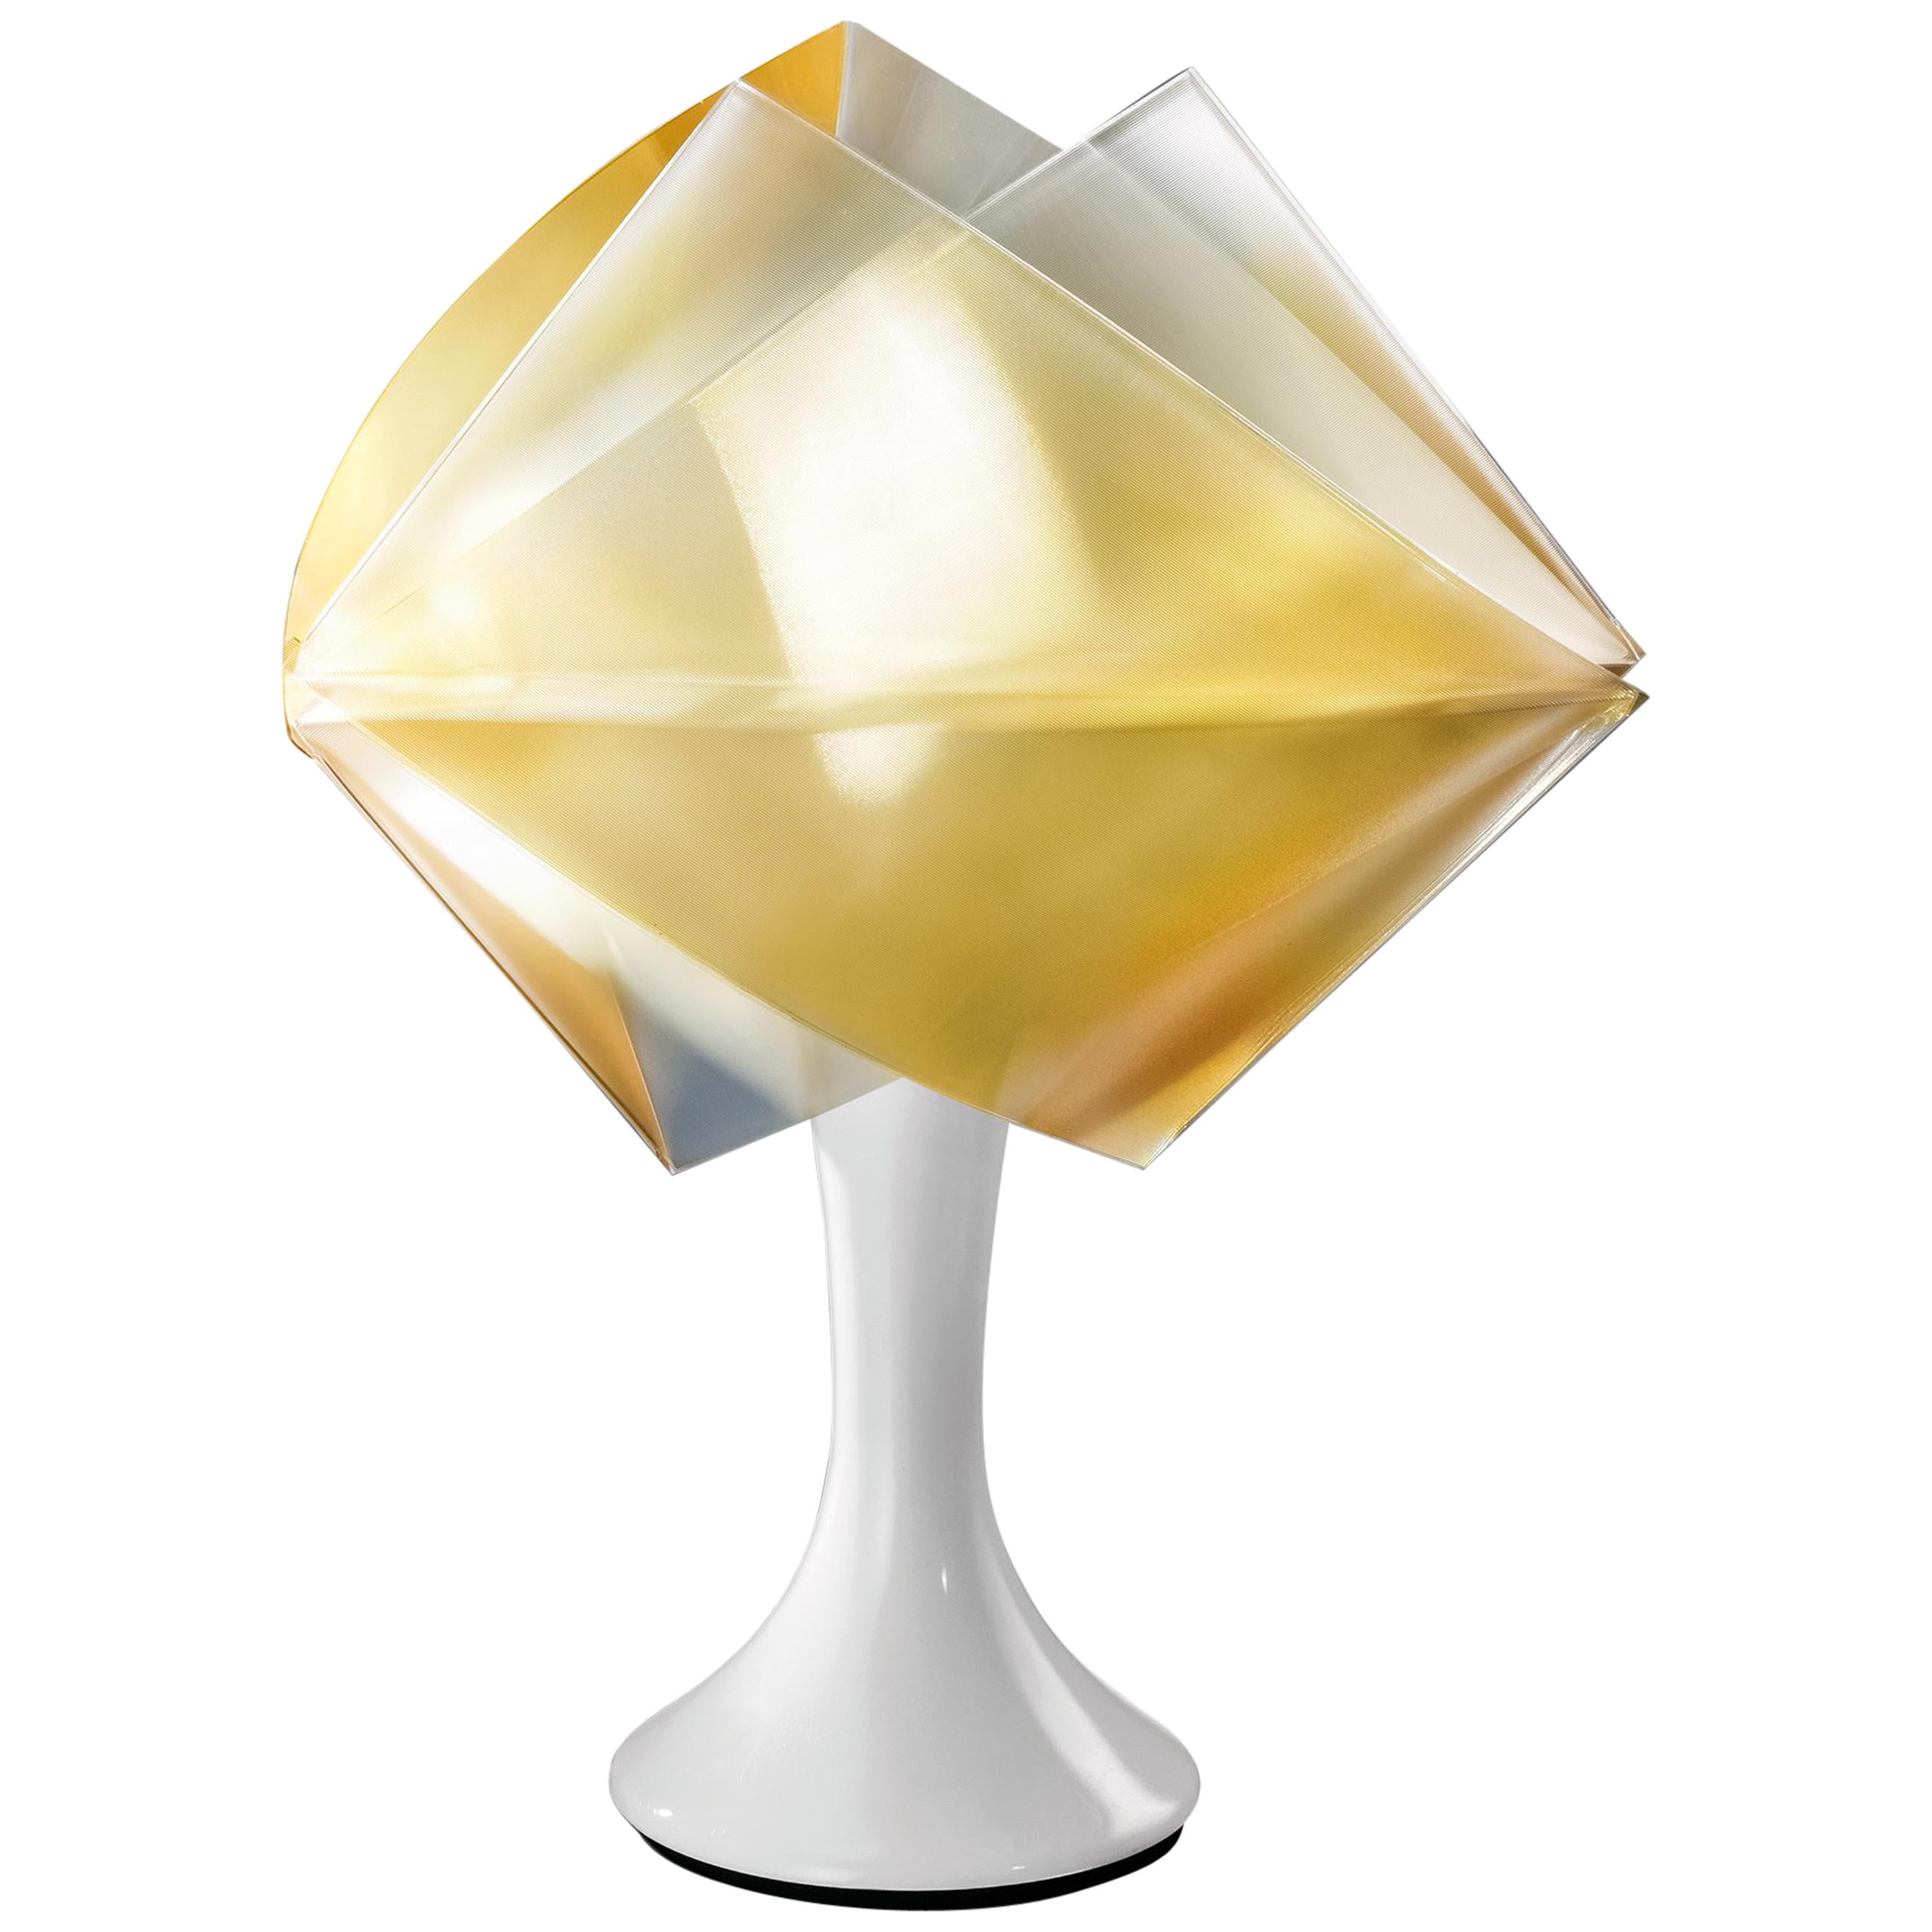 SLAMP Gemmy Prisma Table Light in Gold by Spalletta, Croce, Ragnisco & Wijffels For Sale